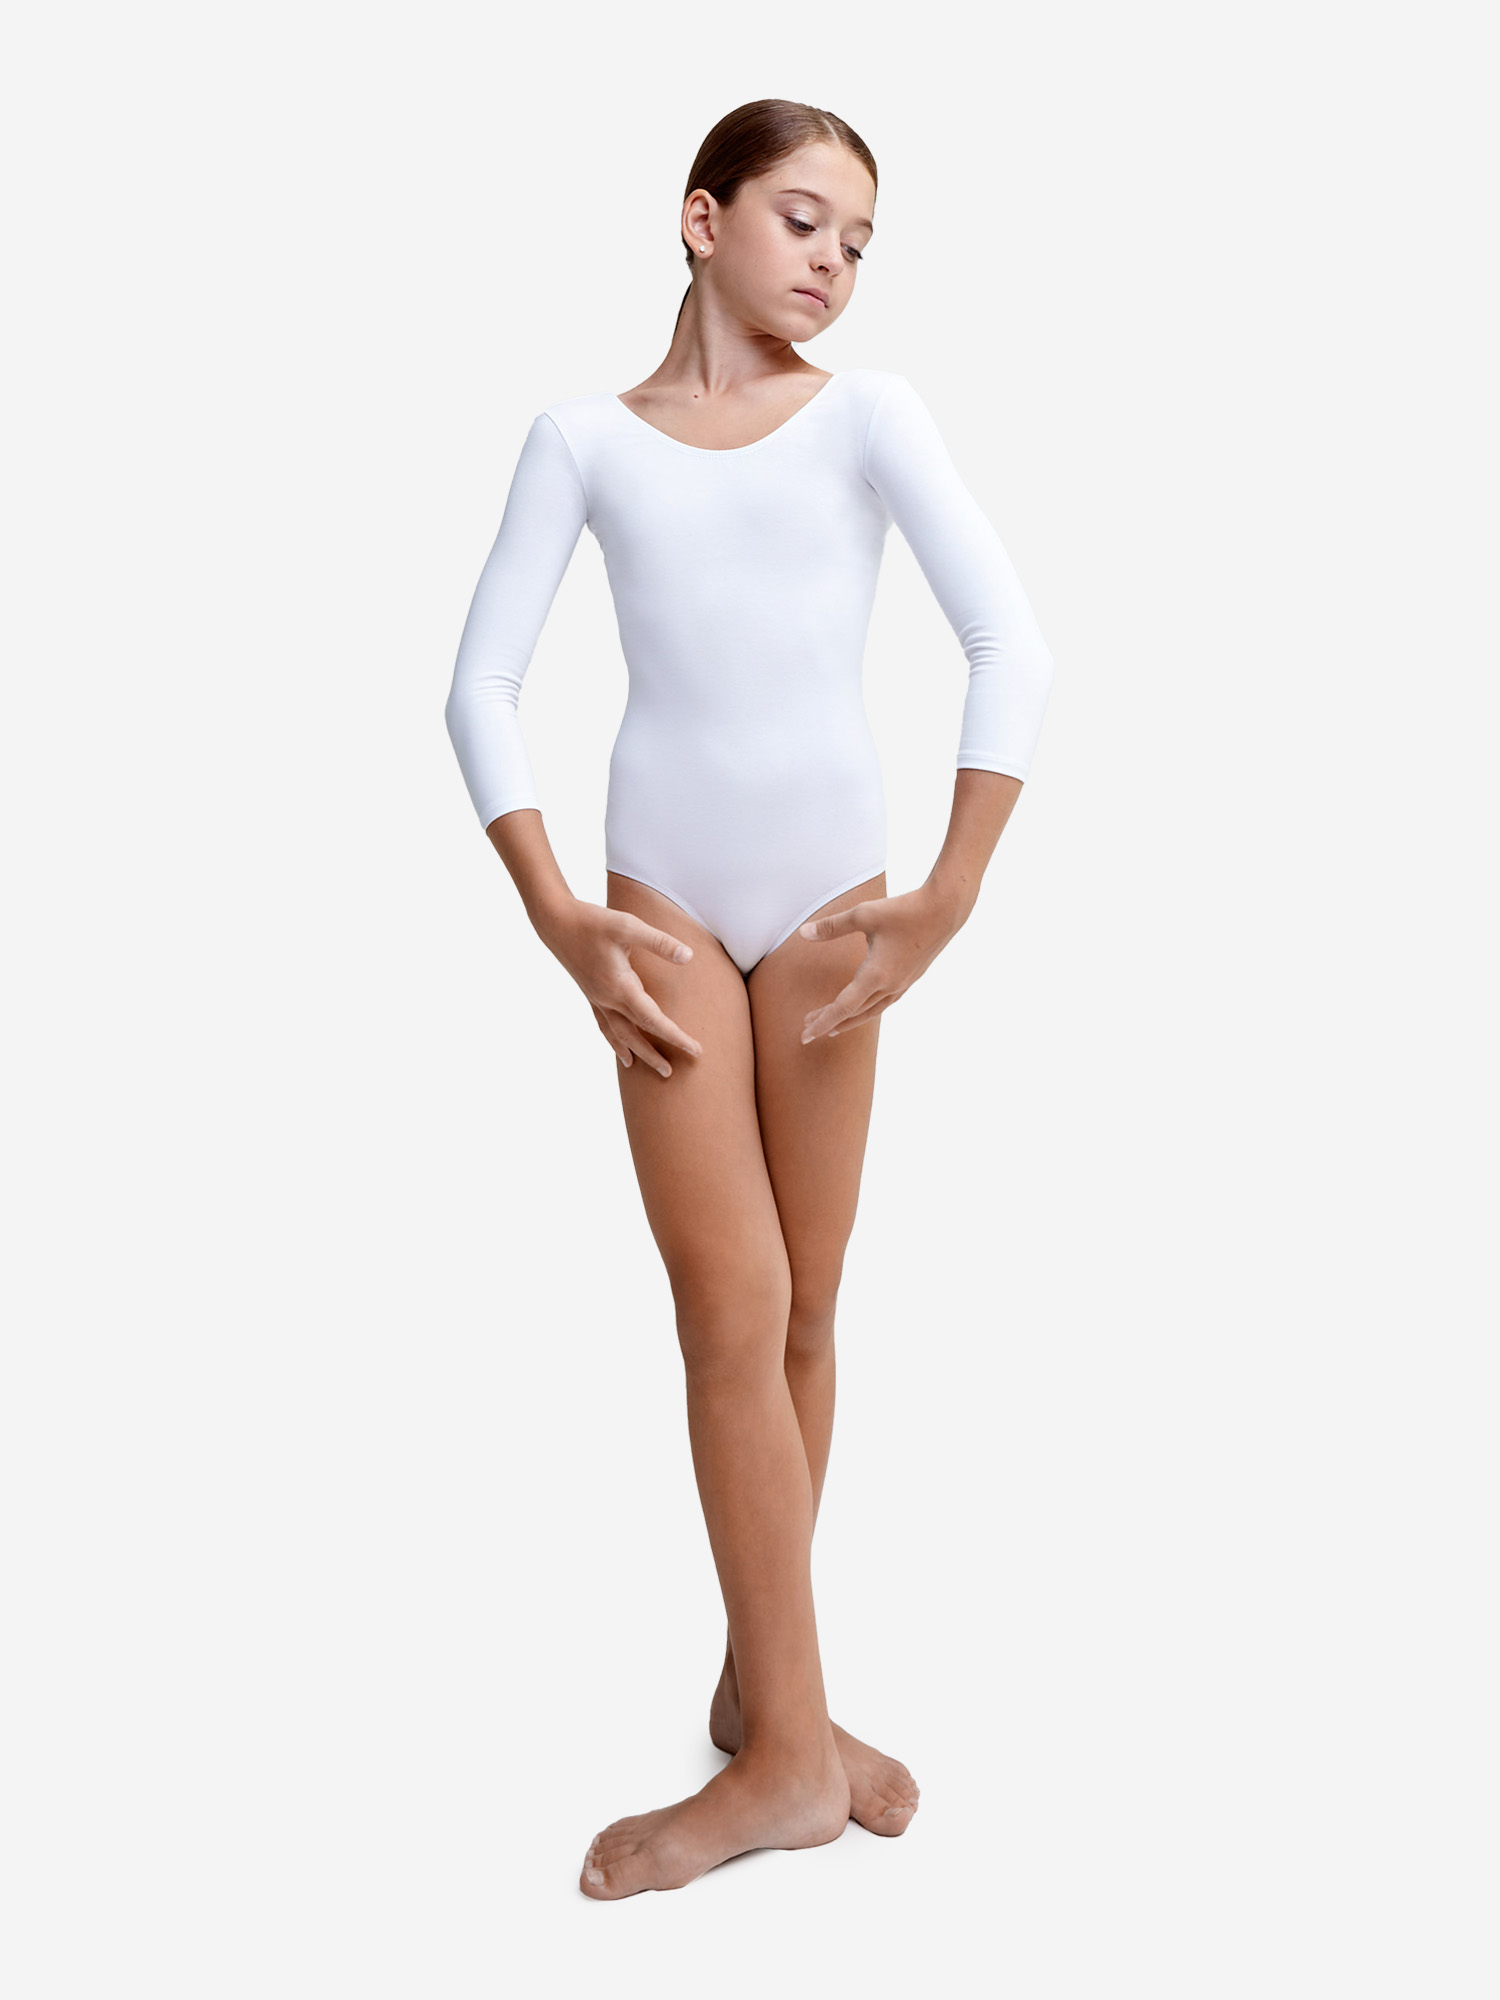 Купальник гимнастический Belkina без юбки для танцев и тренировок, Белый купальник гимнастический belkina без юбки для танцев и тренировок